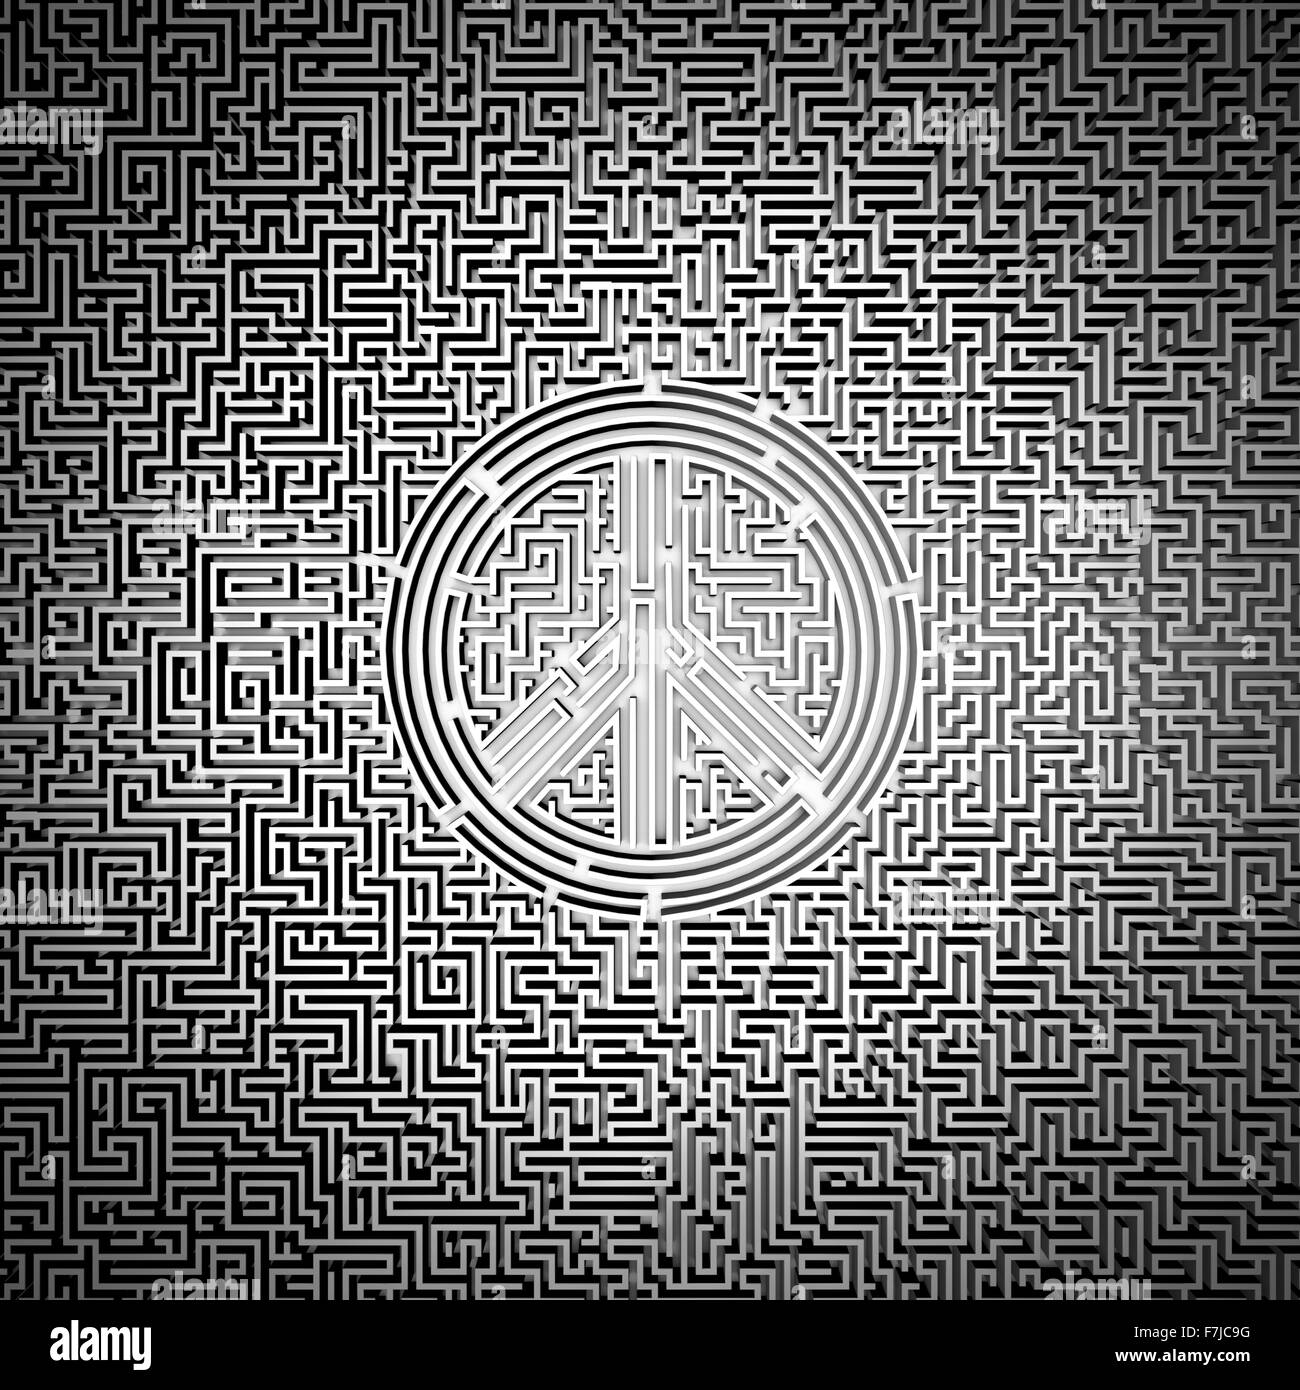 La paix ultime / labyrinthe 3D render of labyrinthe géant avec symbole de paix dans le centre Banque D'Images